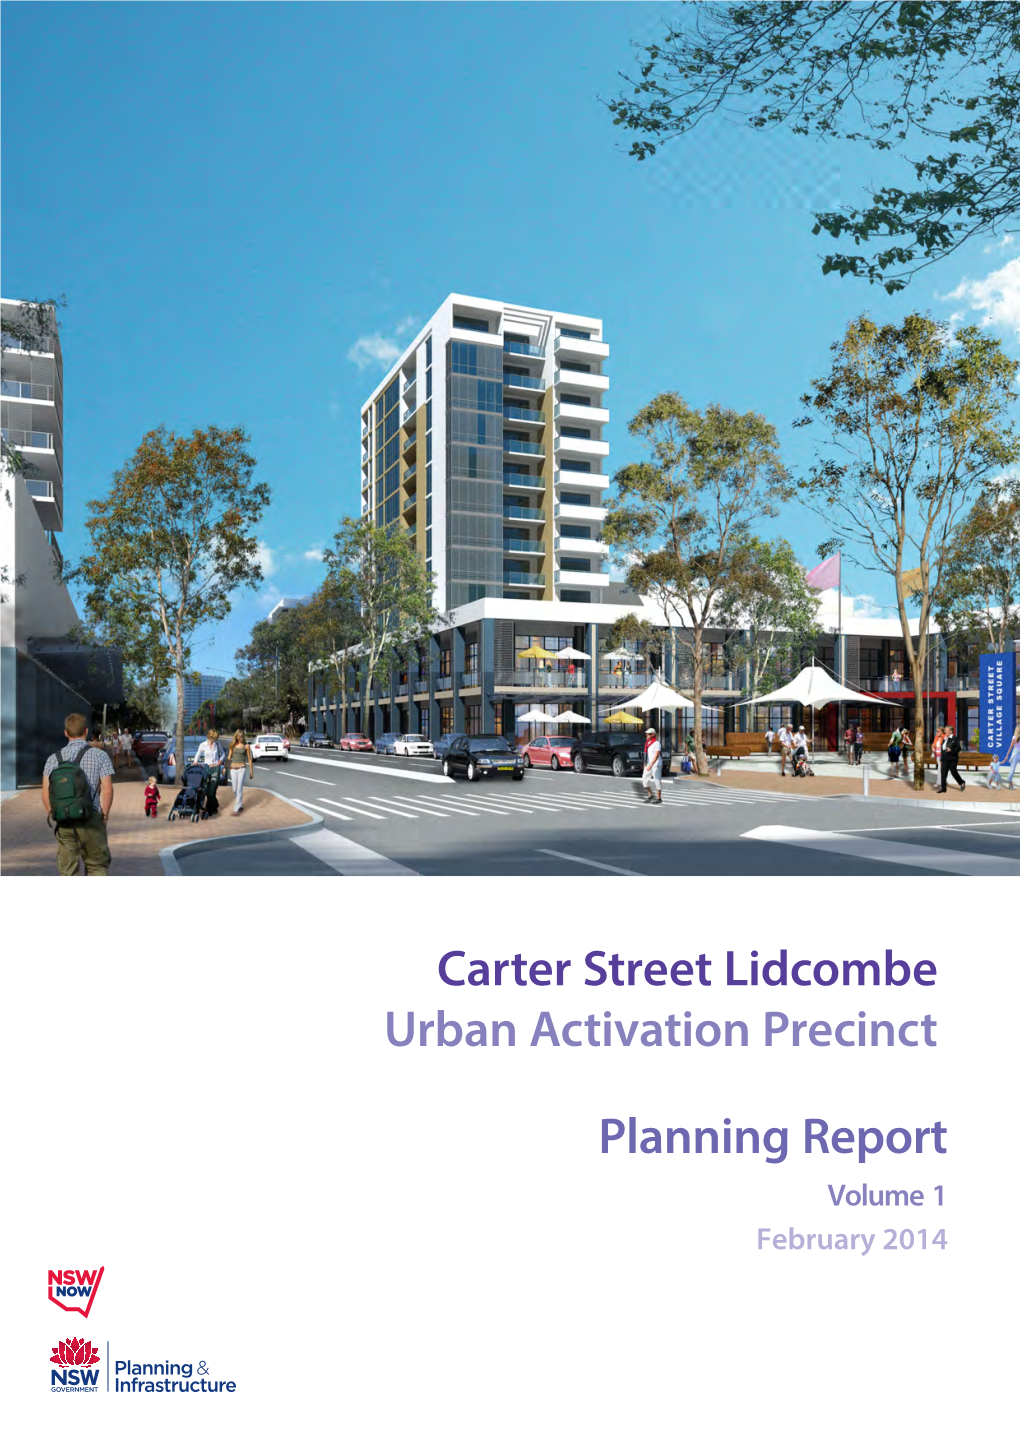 Carter Street Lidcombe Urban Activation Precinct Planning Report